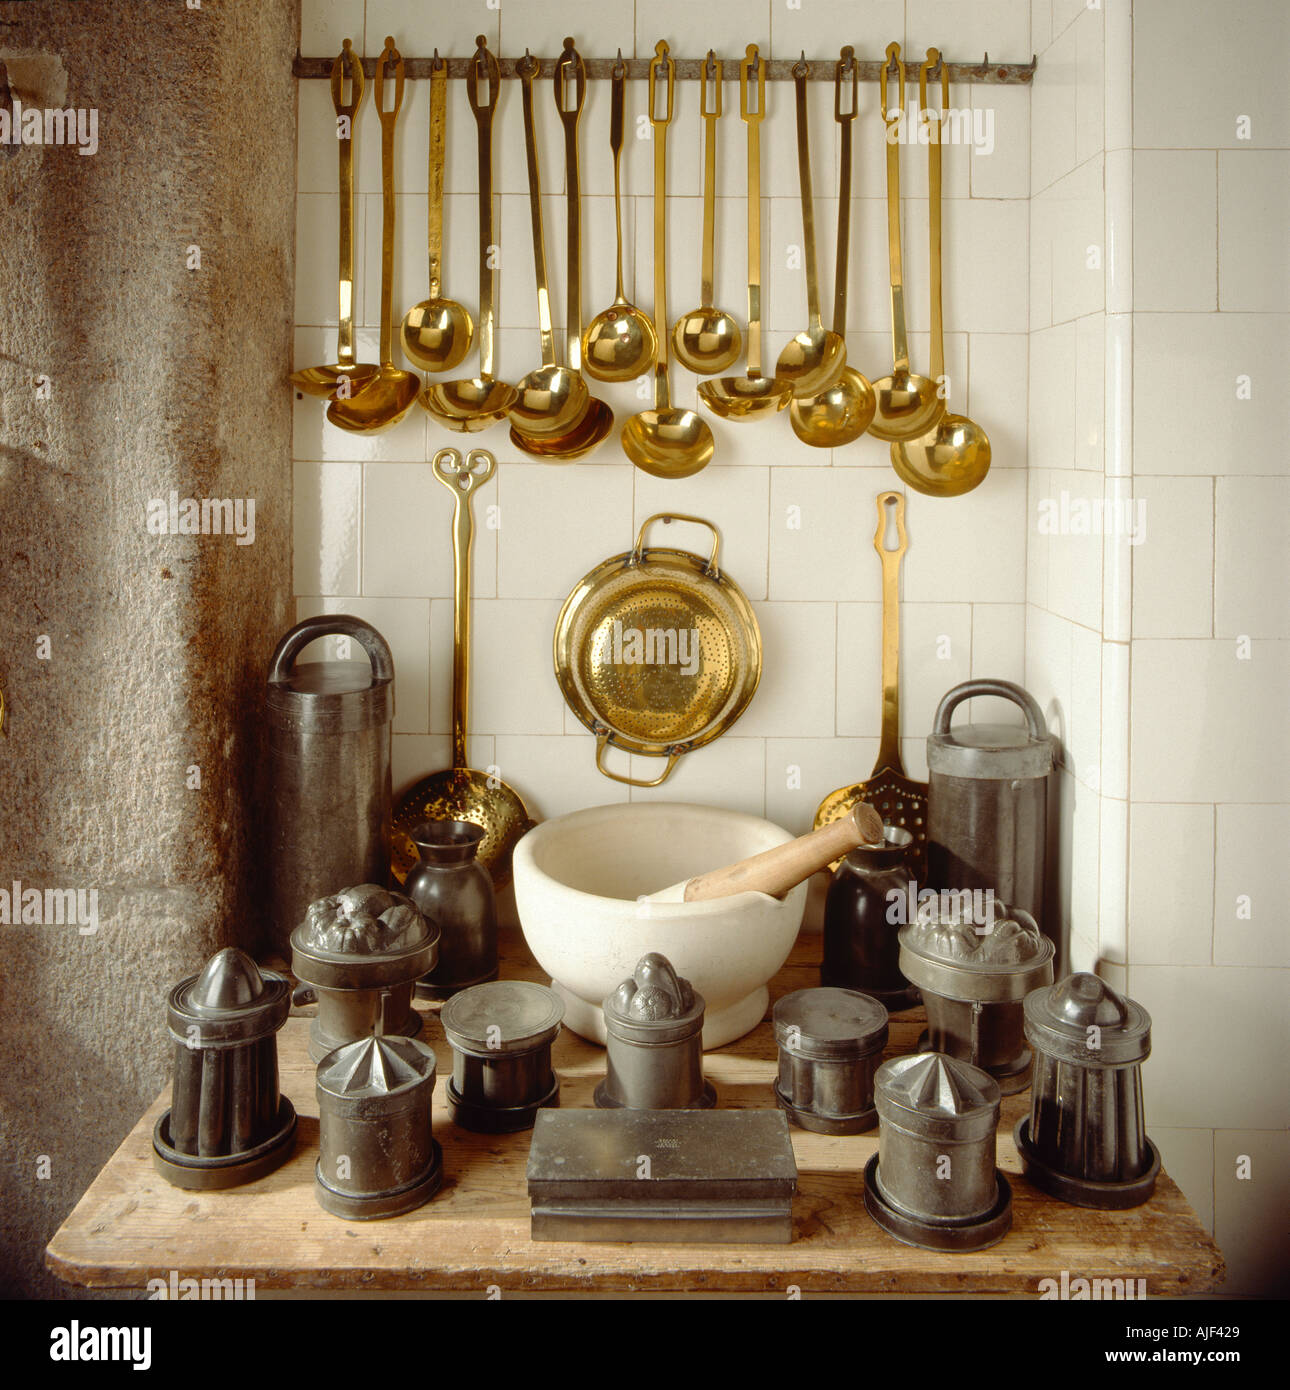 Diverse Küchenutensilien inklusive Messing Schöpfkellen und Stößel und  Mörser auf einem Holztisch im Saltram Devon angezeigt Stockfotografie -  Alamy